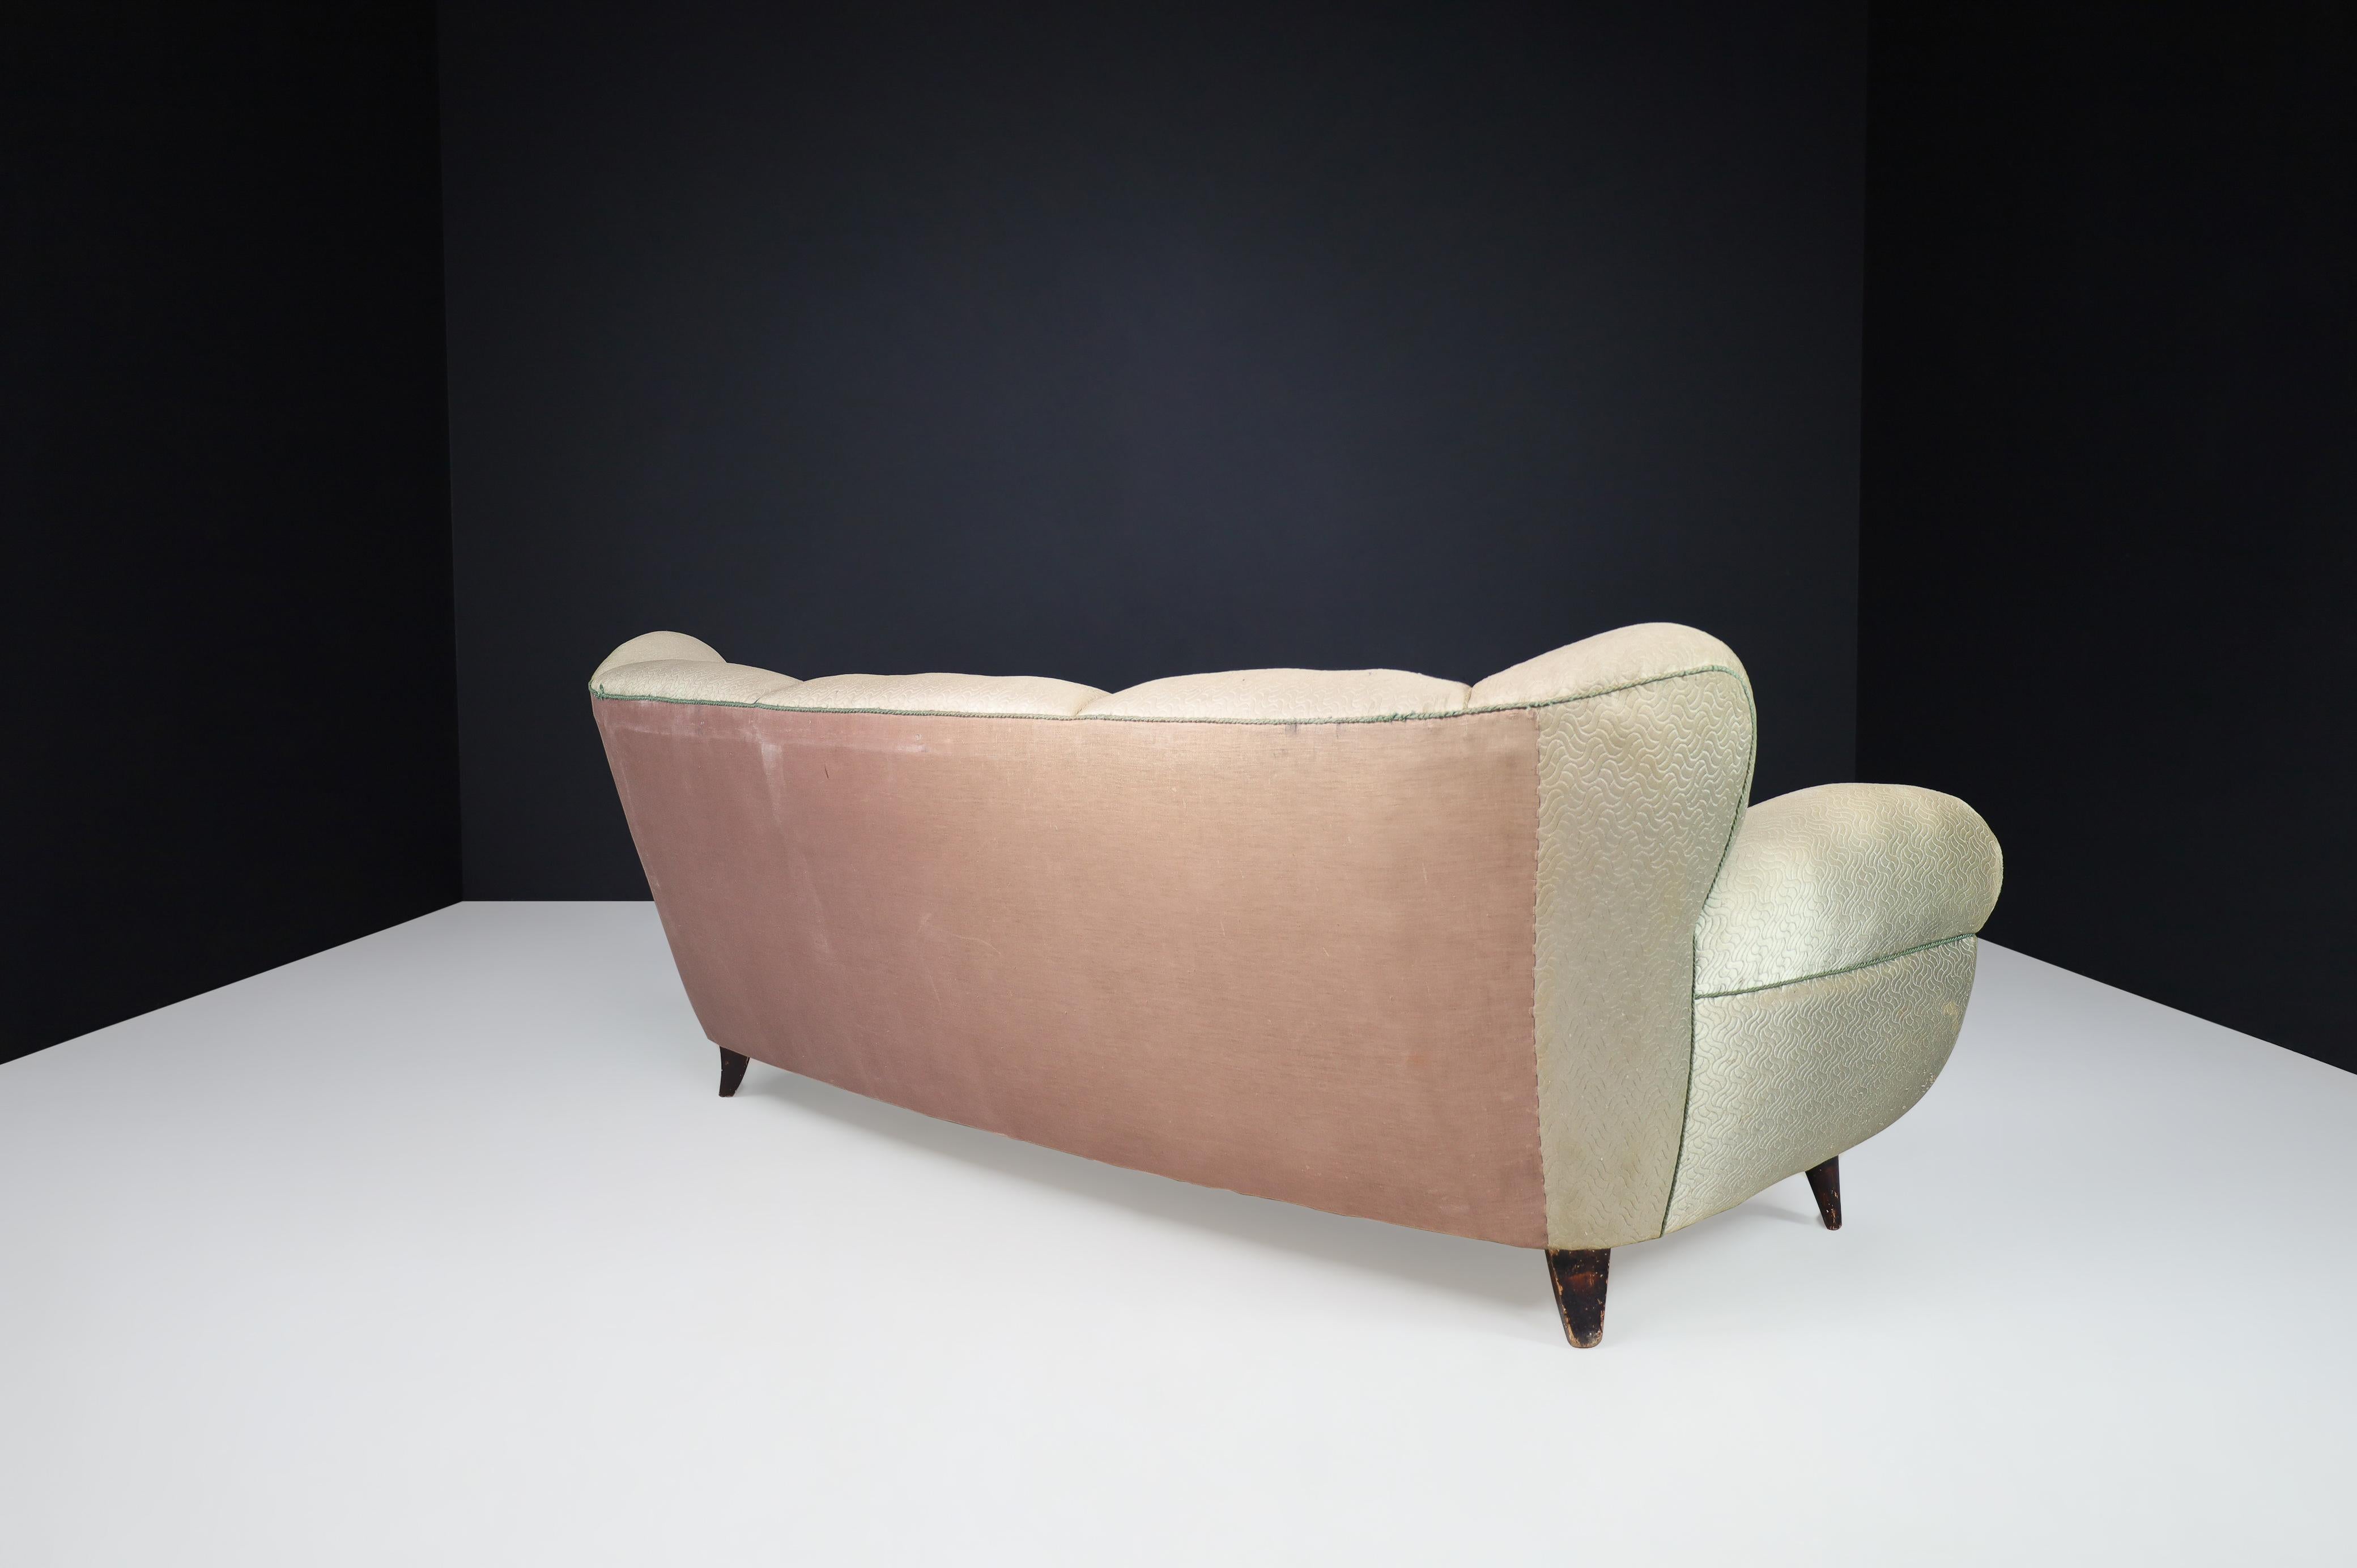 Guglielmo Ulrich Art Deco Sofa in Original Fabric, Italy 1930s For Sale 6